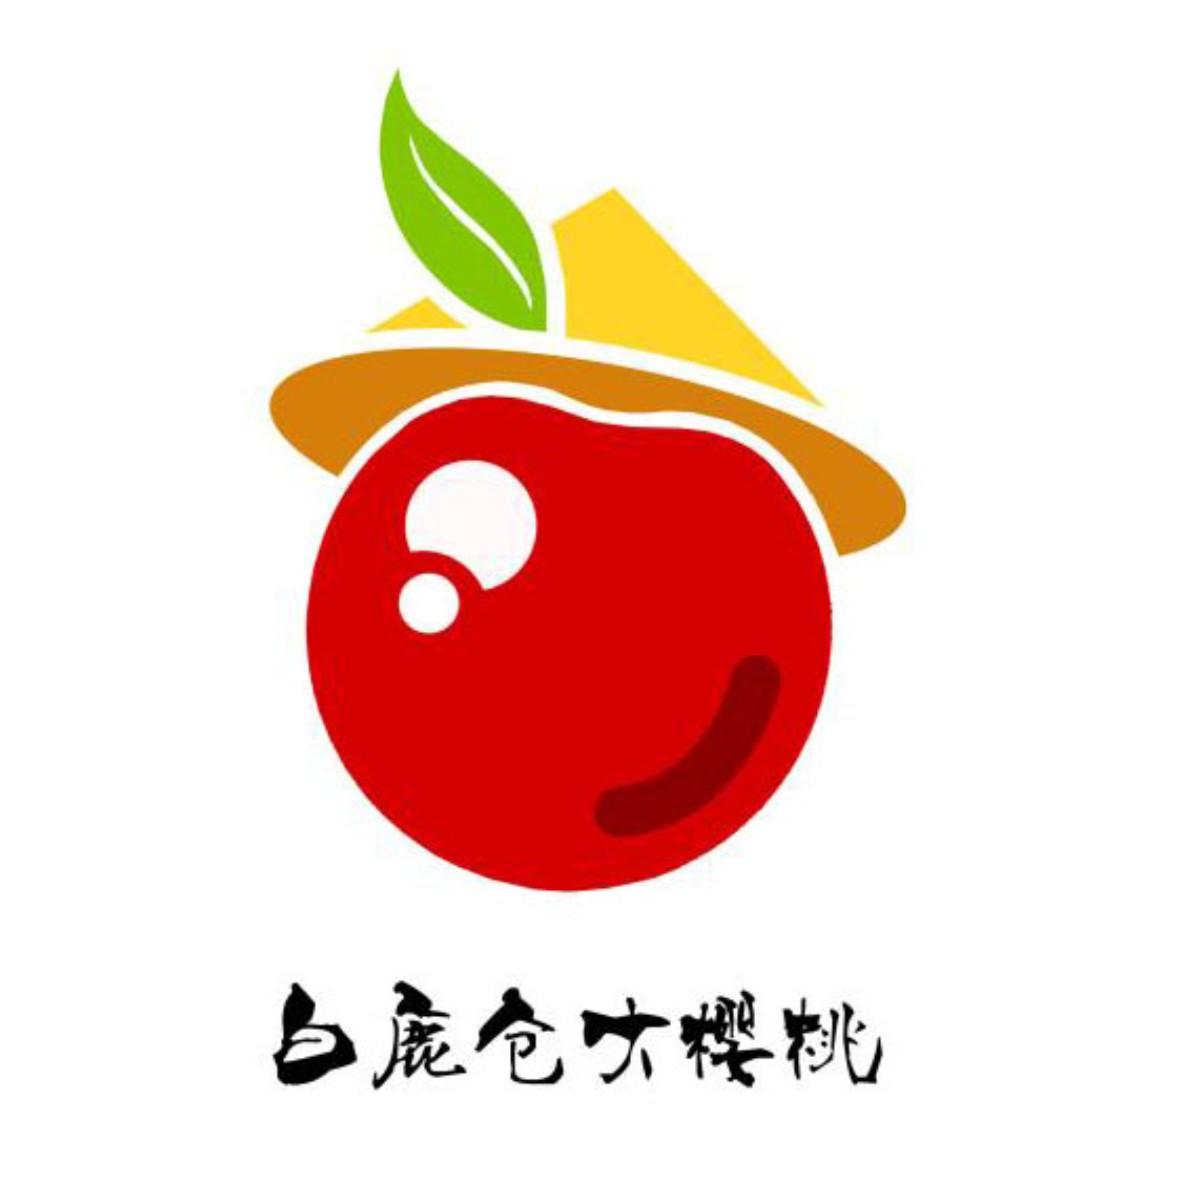 樱桃节标志 画法图片